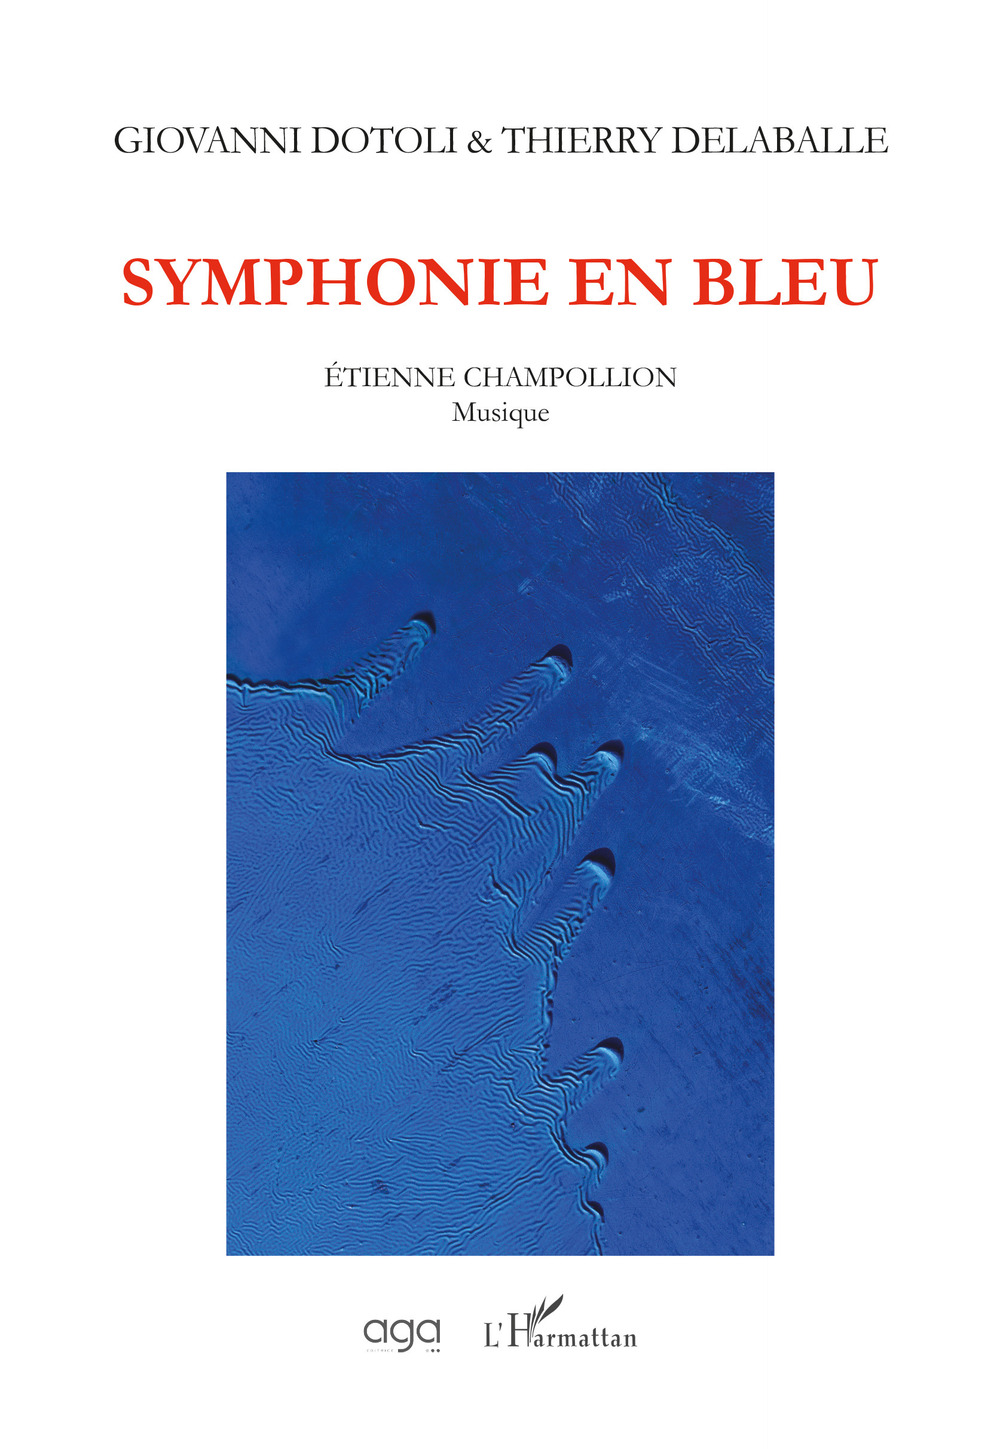 Symphonie en bleu, musique de Étienne Champollion